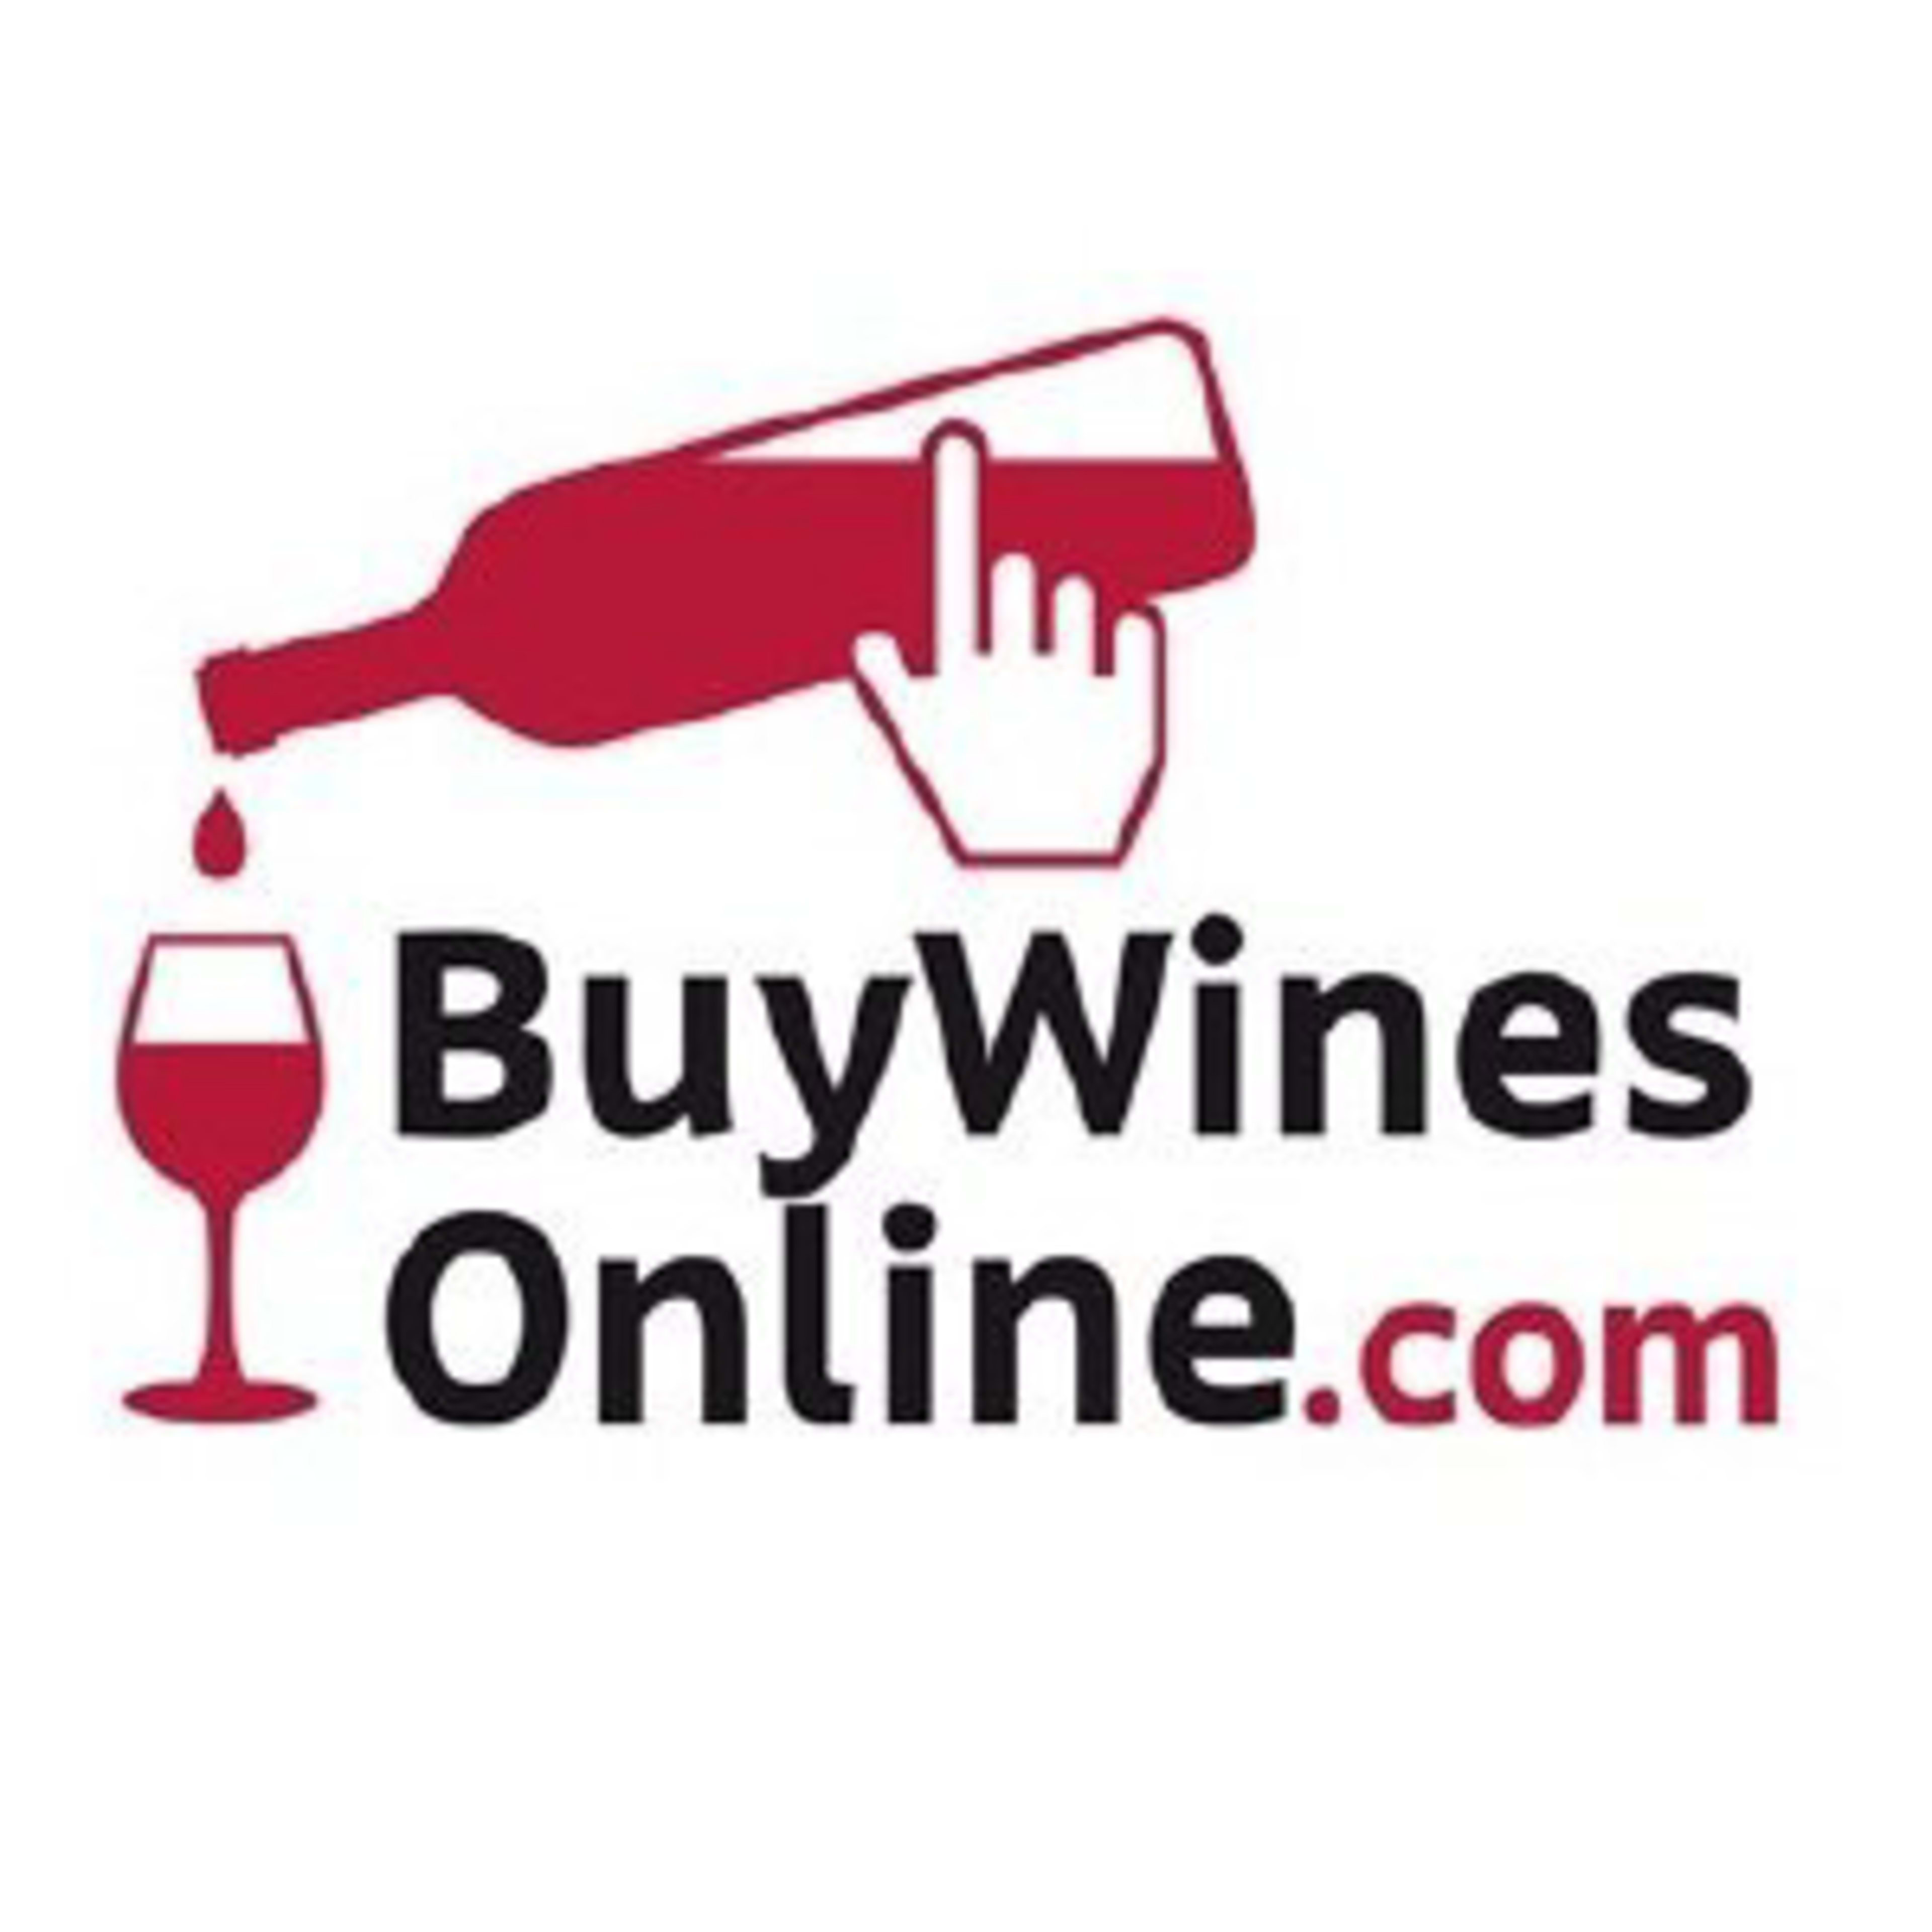 Buy Wines Online Code